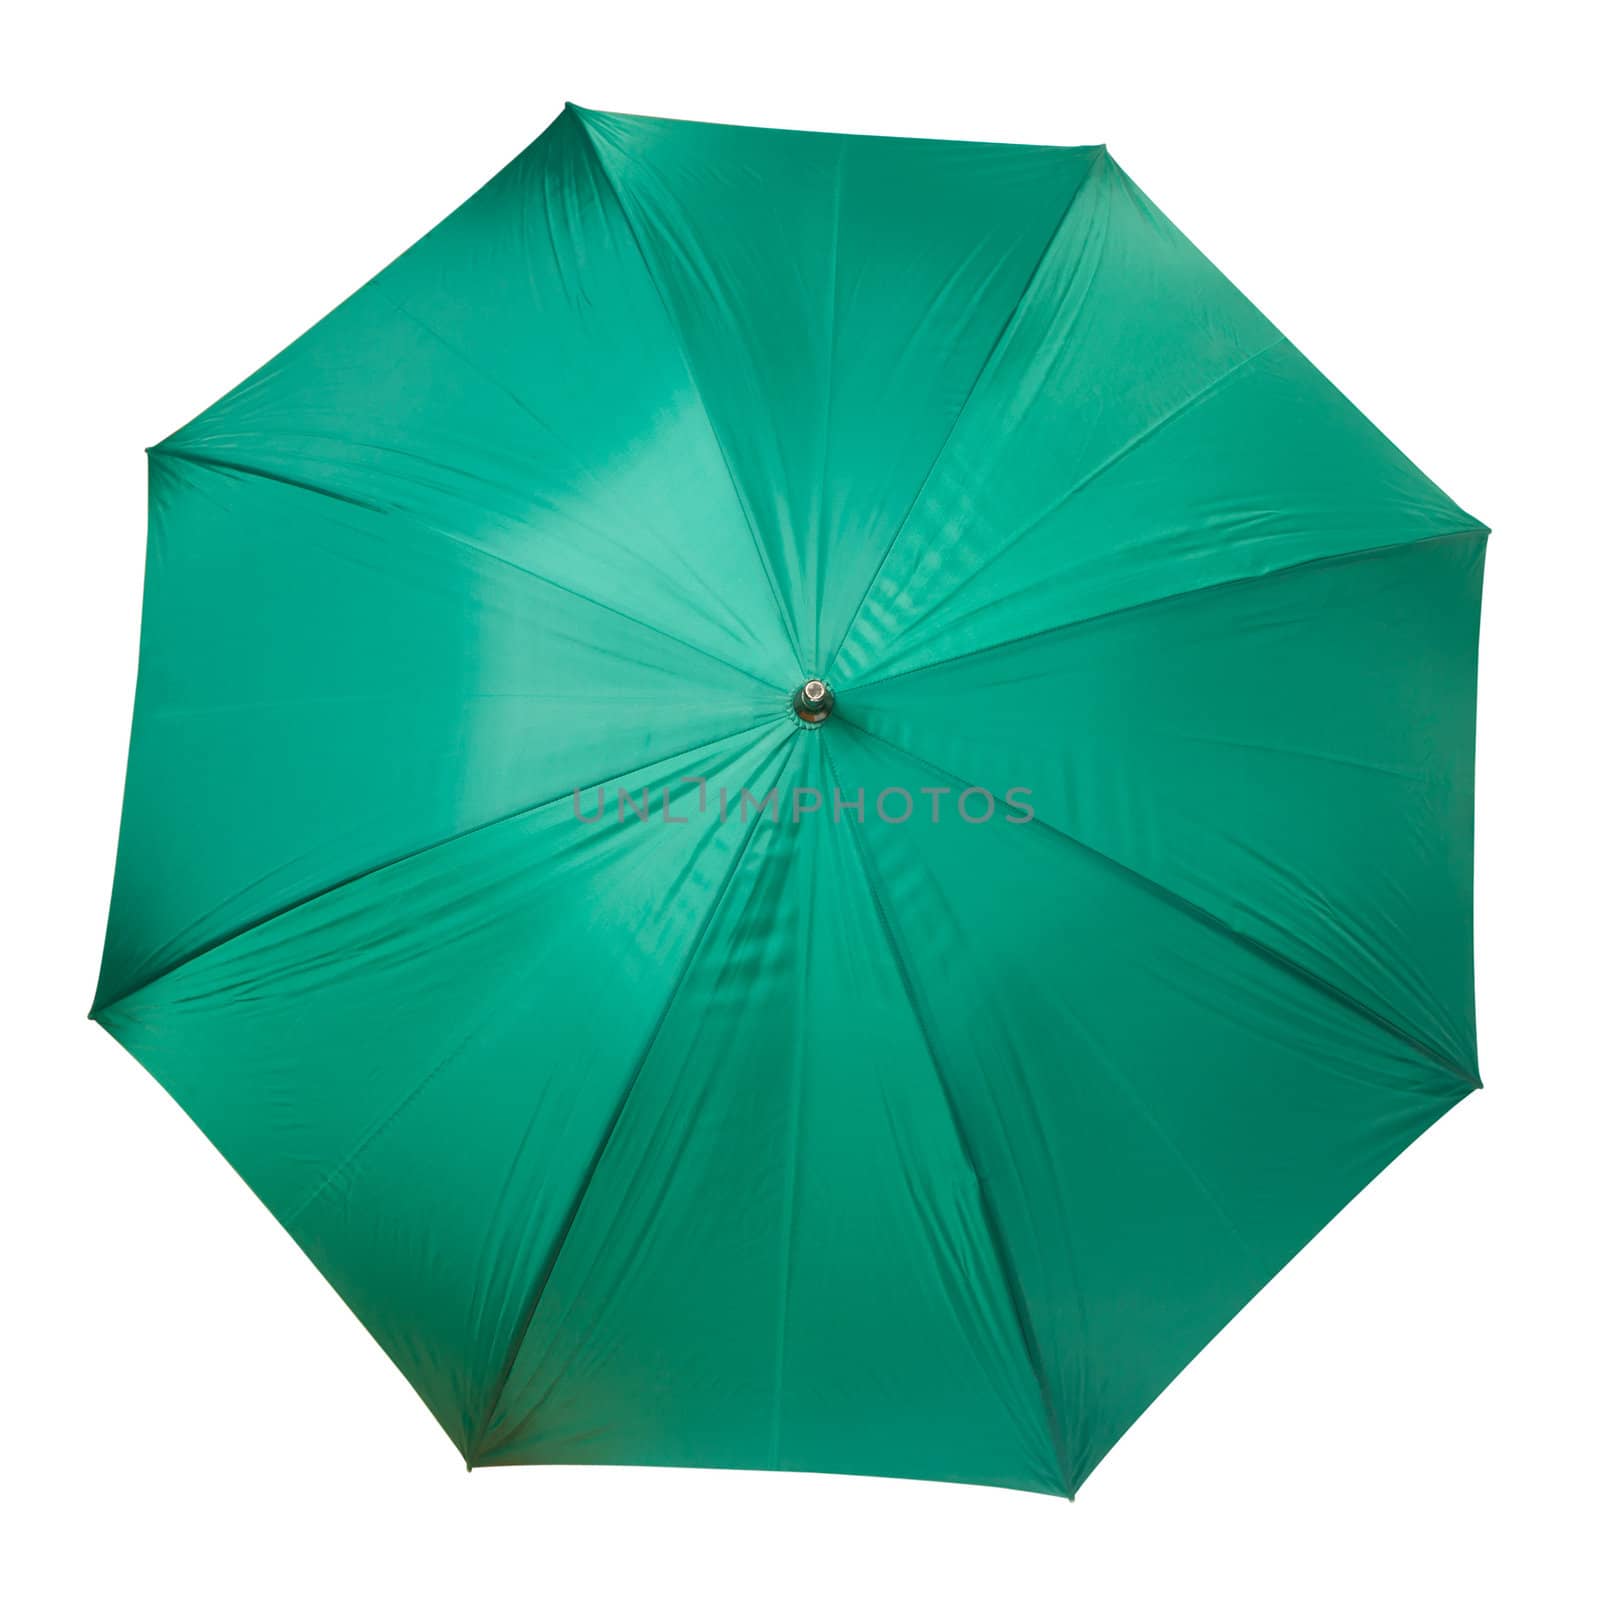 Large green umbrella isolated on white background